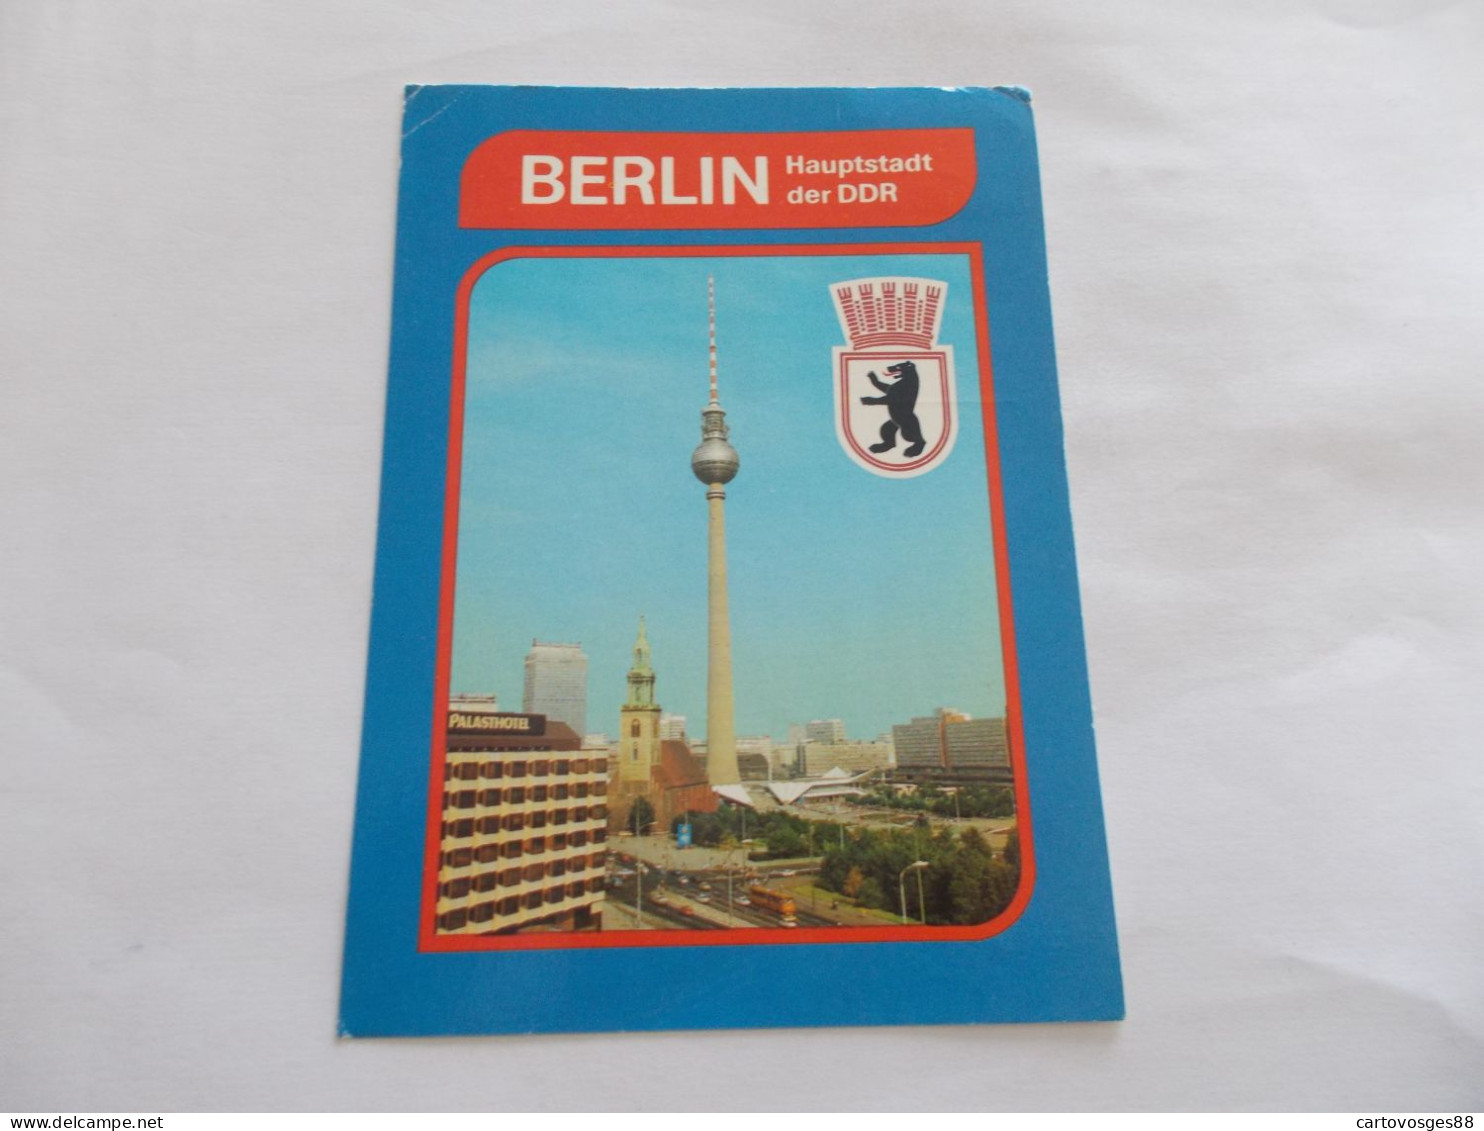 BERLIN   ( ALLEMAGNE GERMANY ) HAUPTSTADT DER DDR  STADTZENTRUM PALASHOTEL AU 1er PLAN - Brandenburger Door